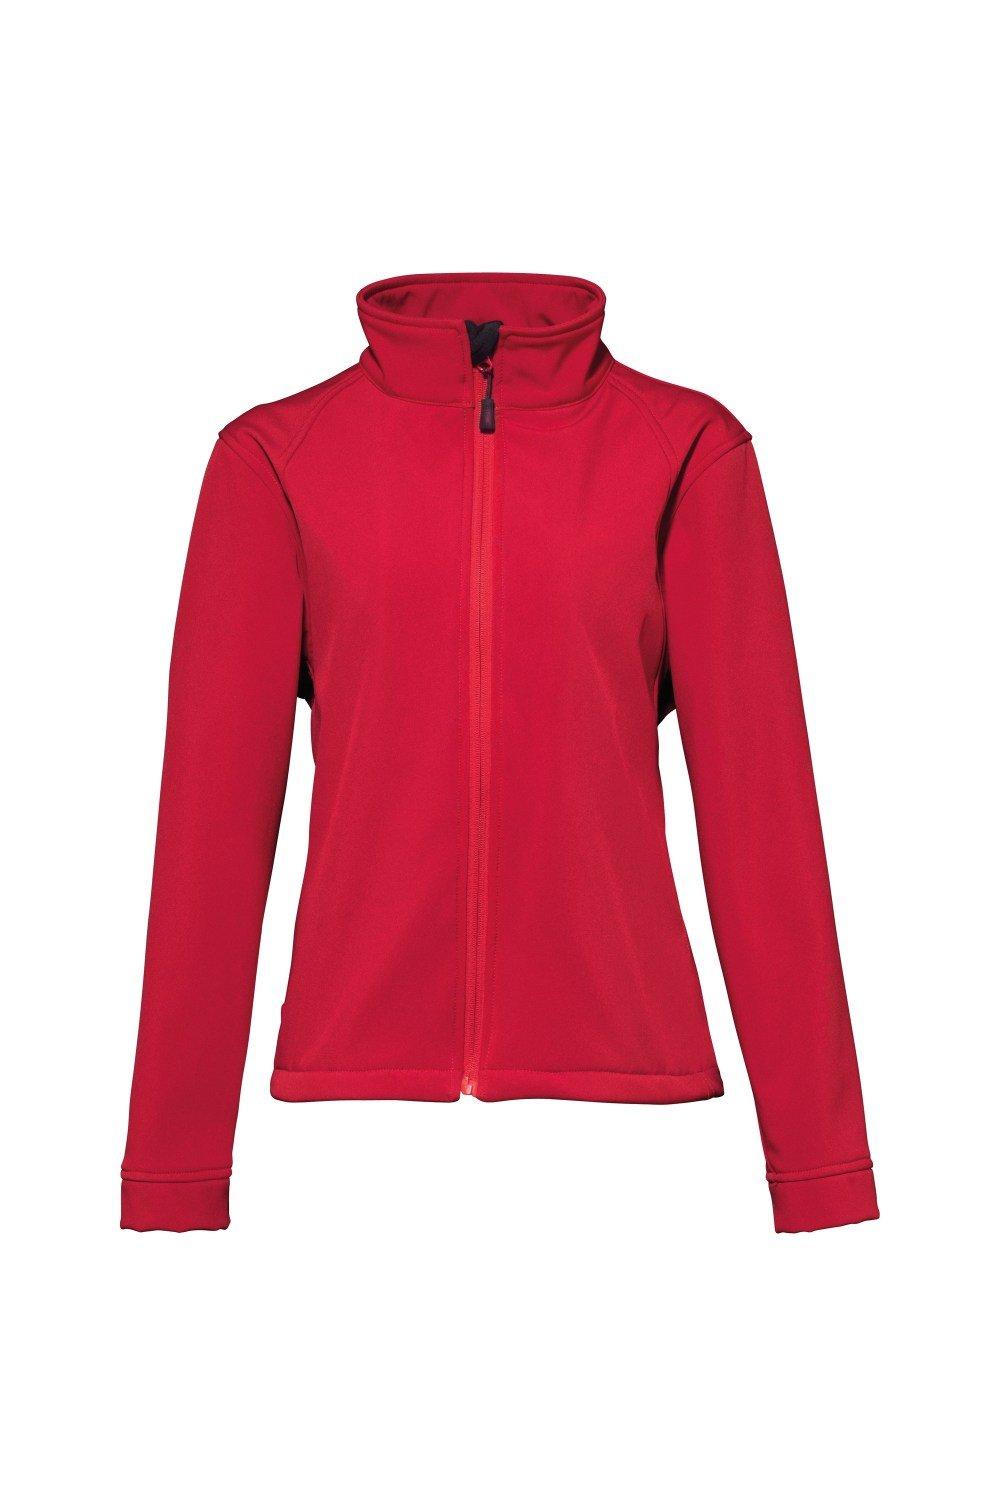 3-слойная куртка Softshell Performance (ветро- и водостойкая) 2786, красный